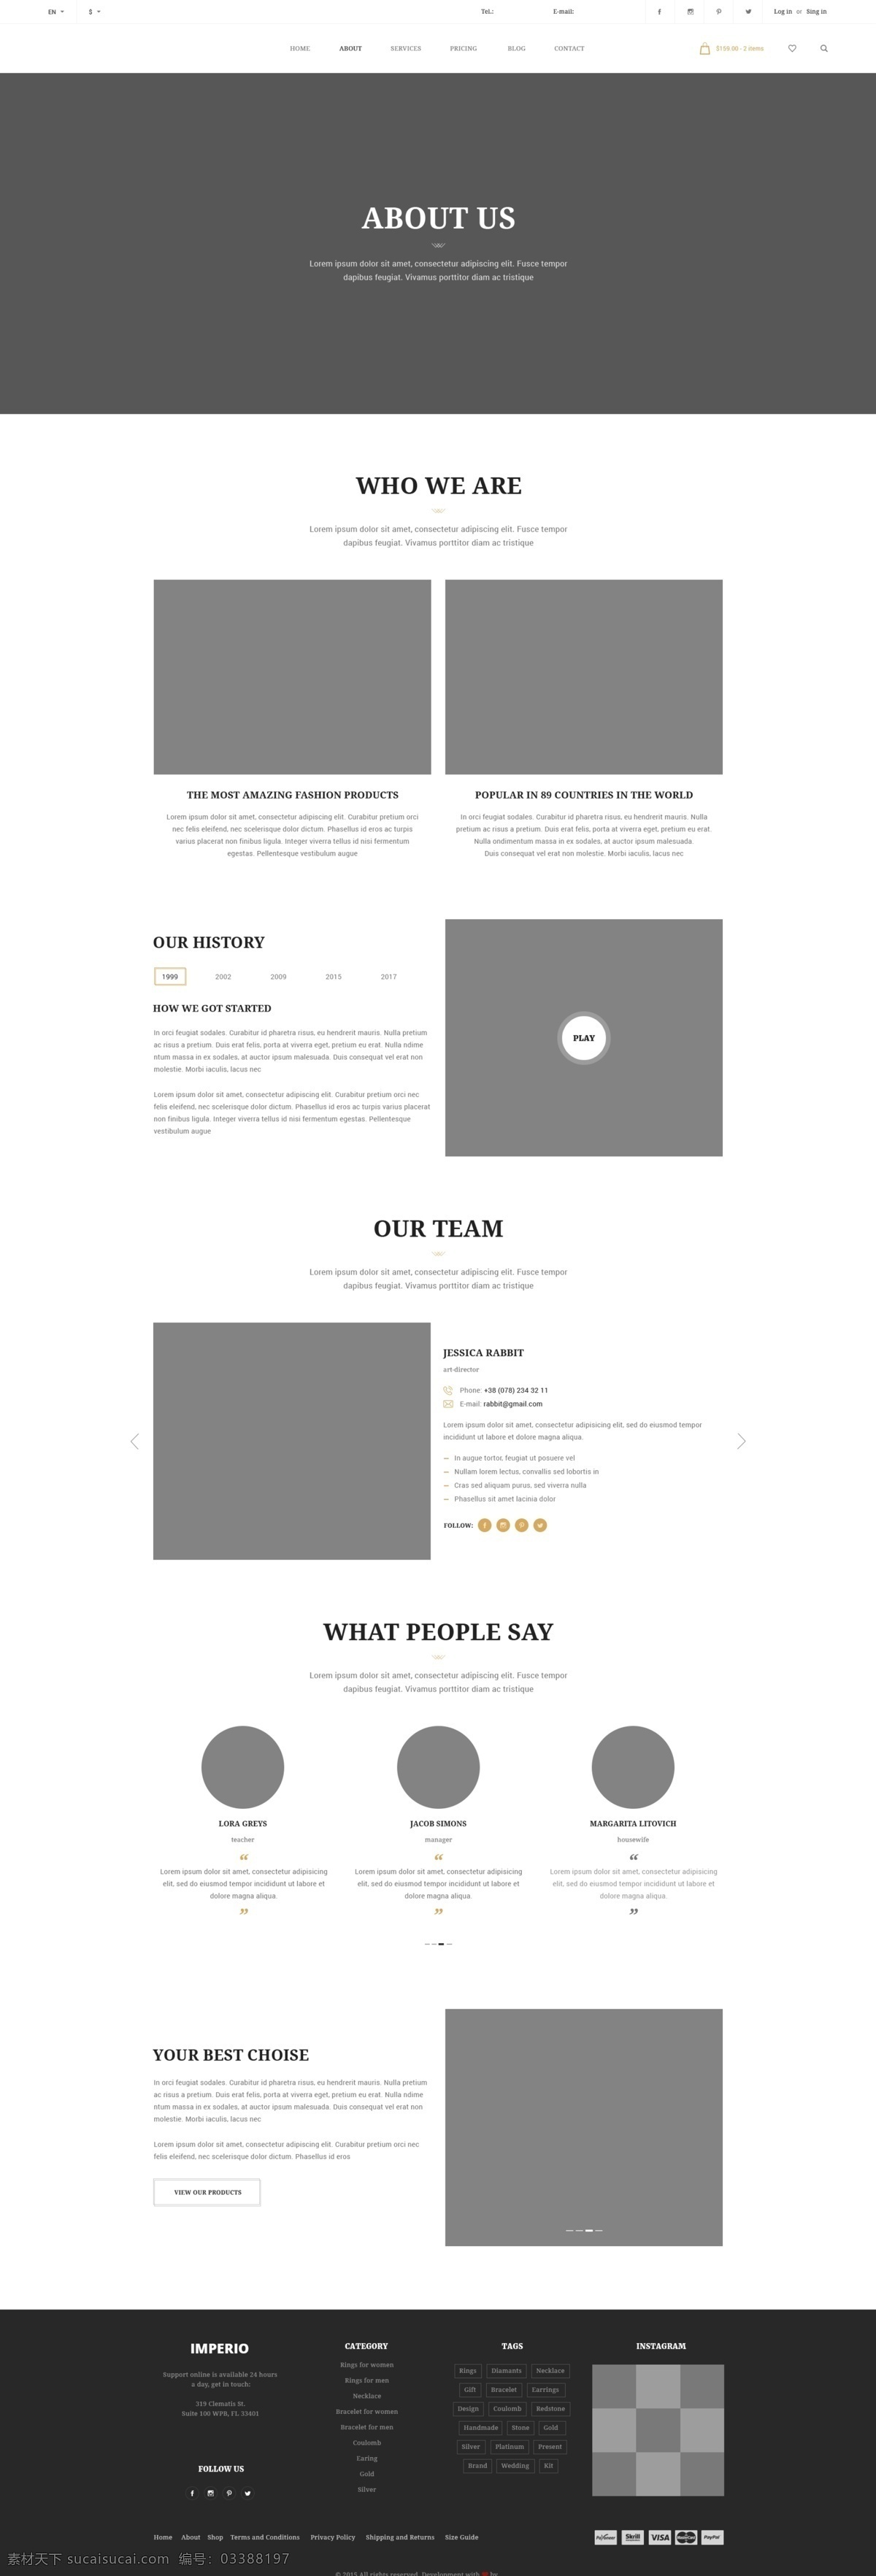 多图 介绍 式 关于 我们 页面 排版 模板 about 扁平化页面 关于我们 关于我们页面 简约网页设计 网页设计 页面排版